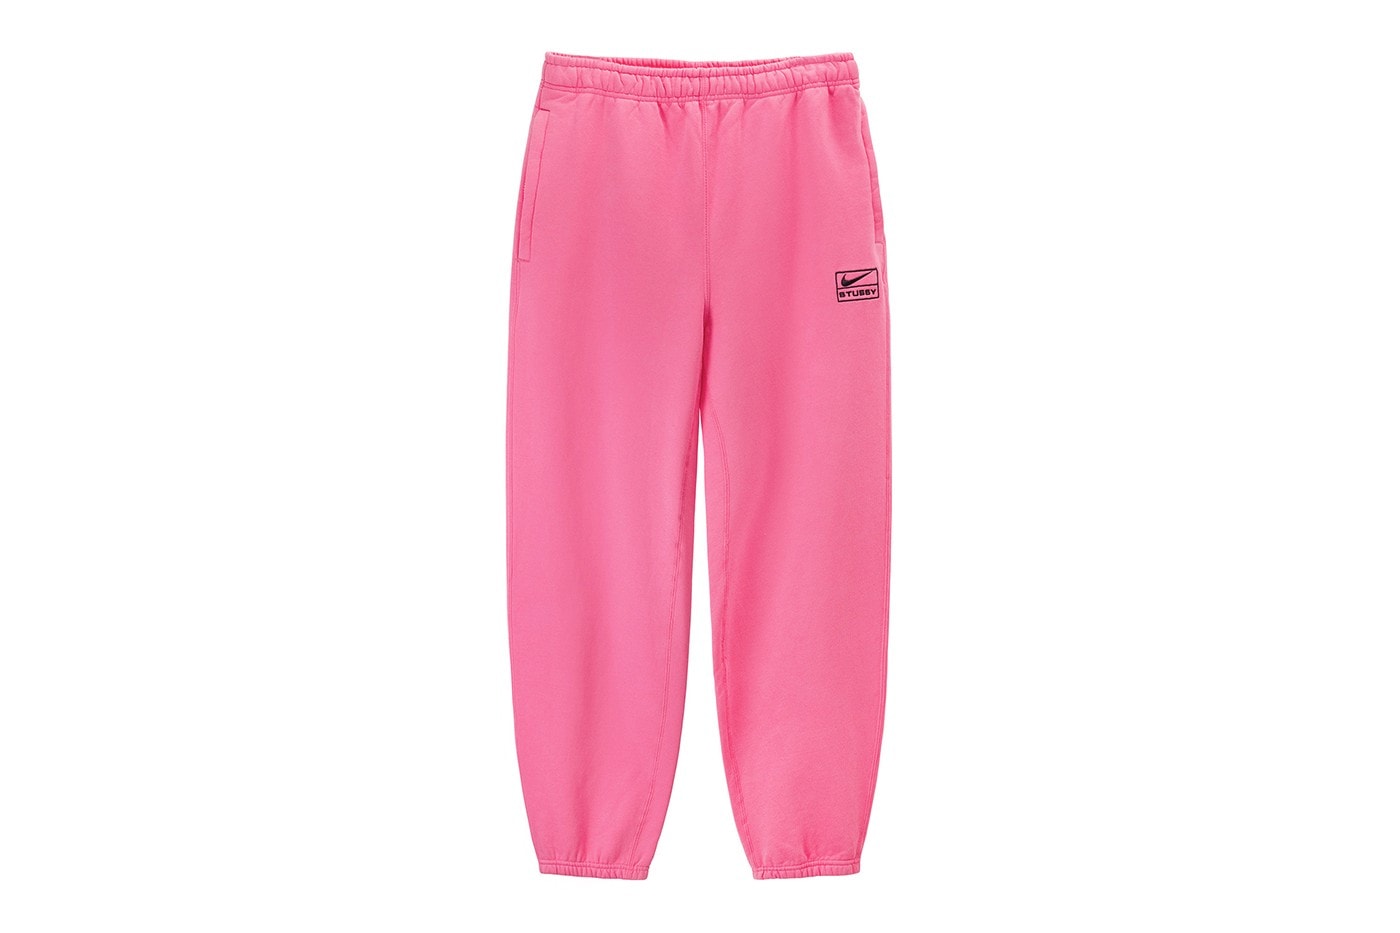 Stüssy Nike Air Max 2013 2015 Fossil Pink Beige Mesh Swoosh